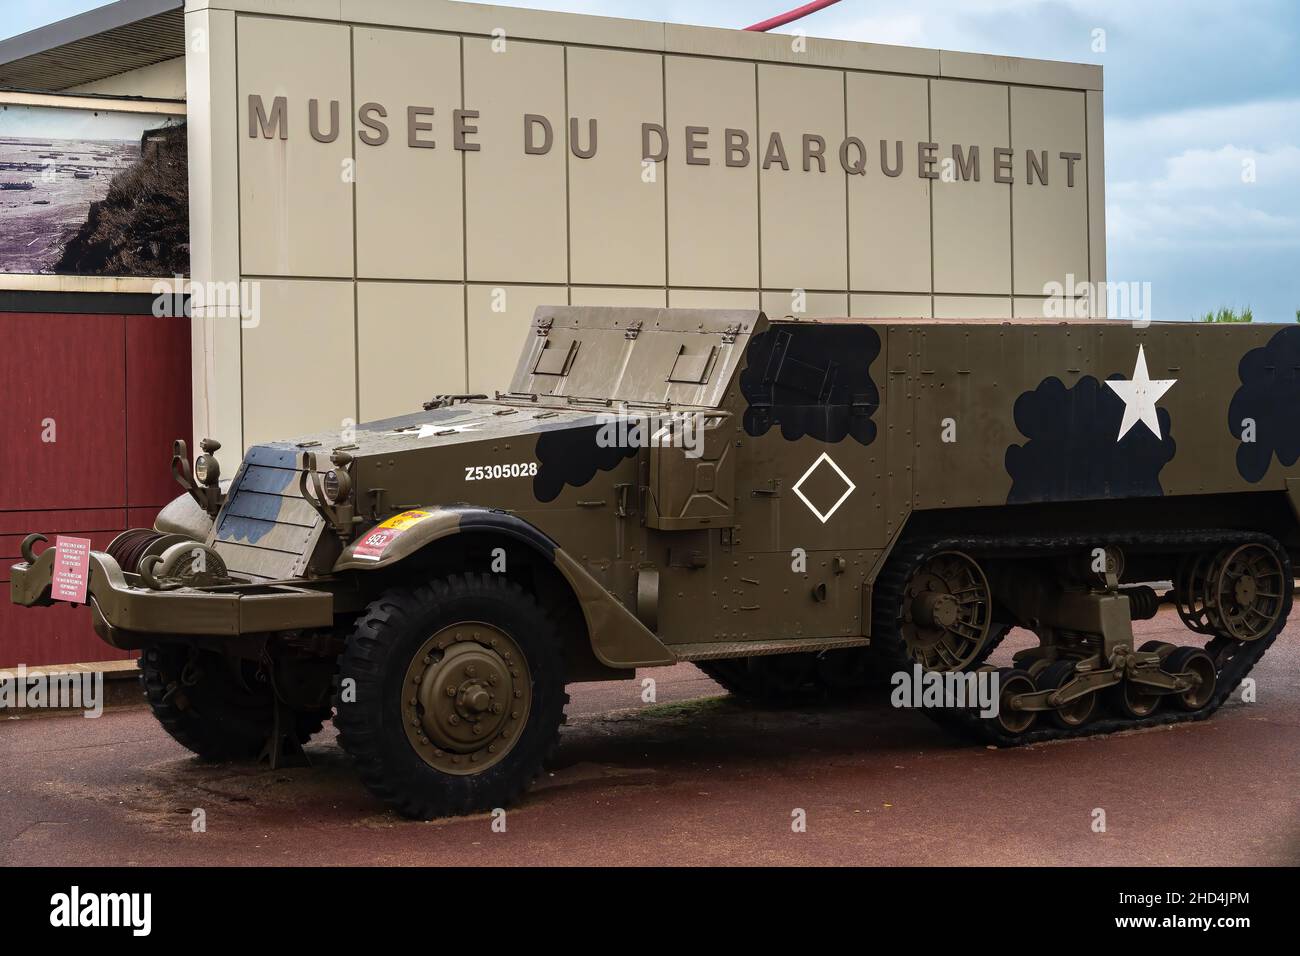 Arromanches, Frankreich - 2. August 2021: Musee du Debarquement - Übersetzung: Landing Museum. Gepanzertes US-Militärfahrzeug vor dem Gebäude. Stockfoto